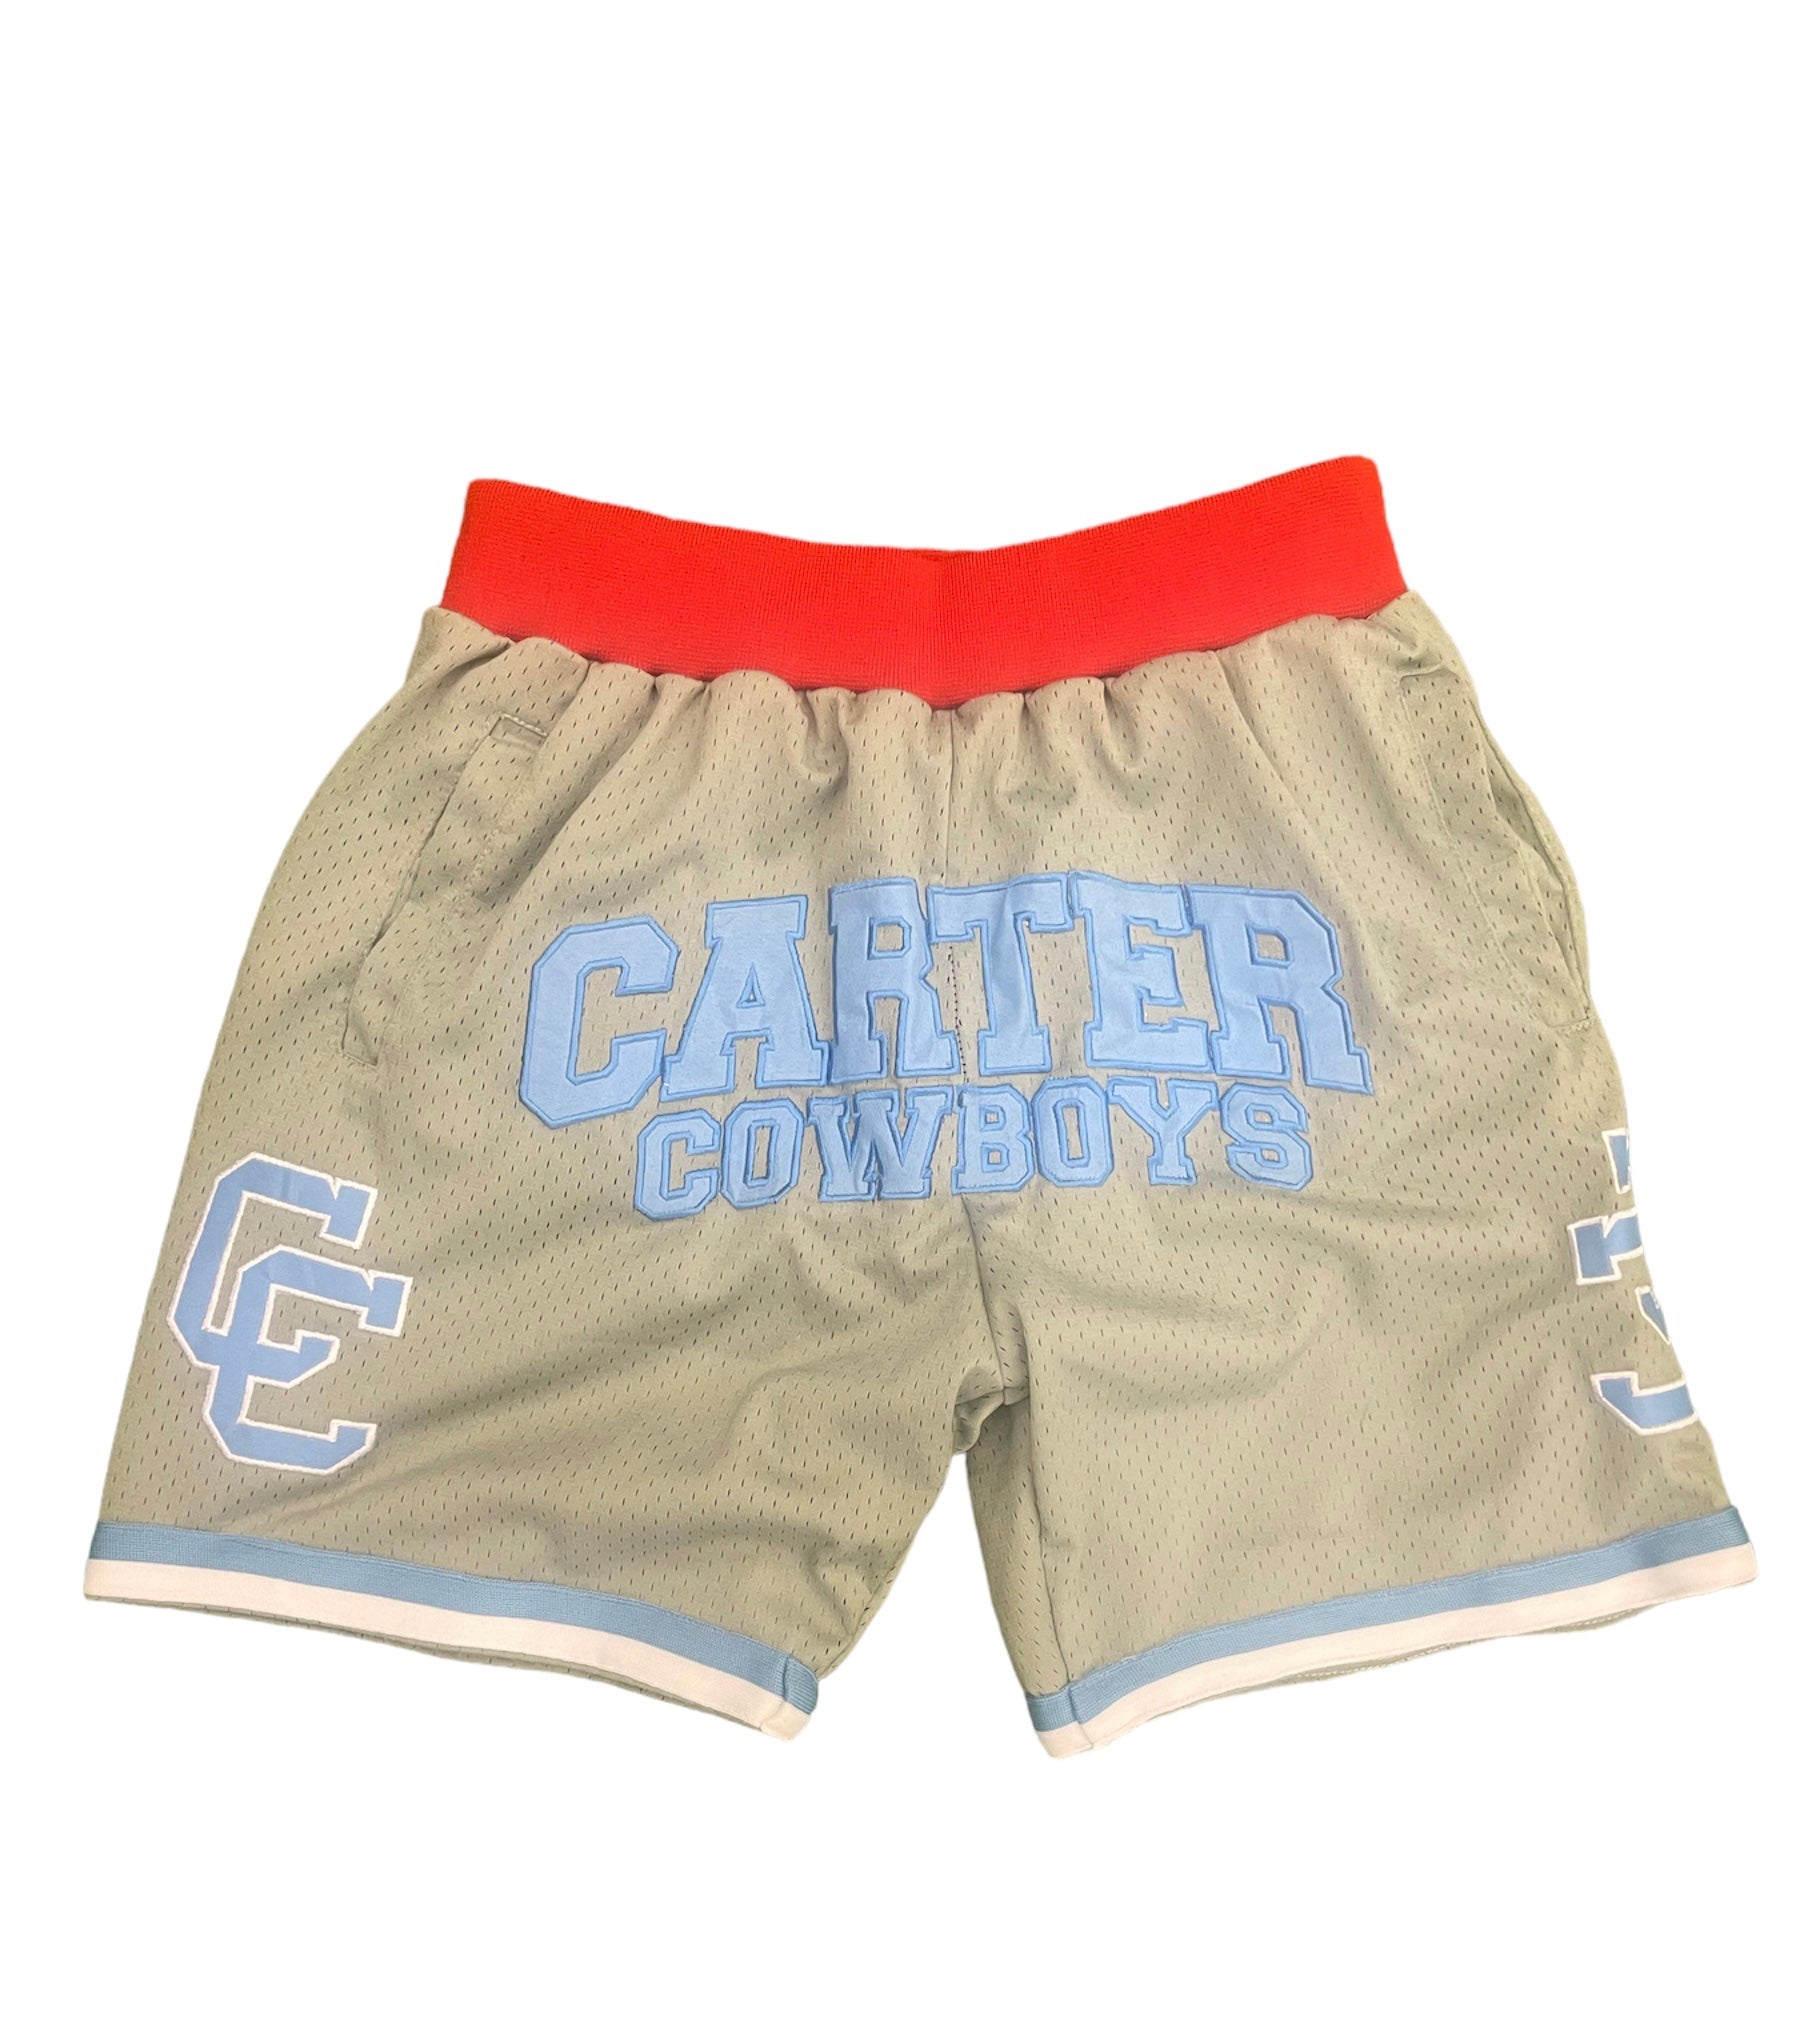 Dallas Carter Basketball Shorts Grey